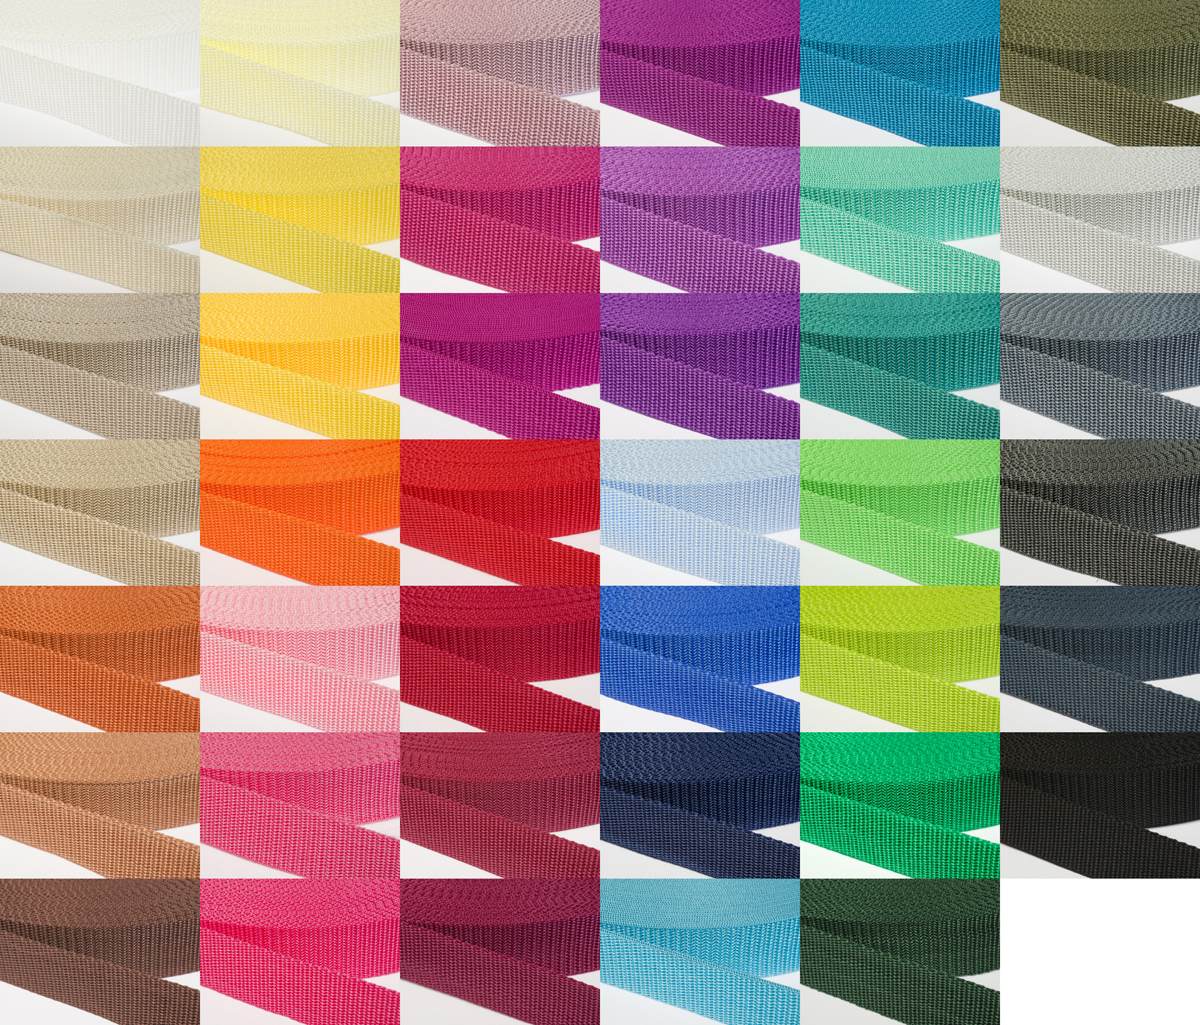 Gurtband 30mm breit aus Polypropylen in 41 Farben 13 - pink 50 Meter